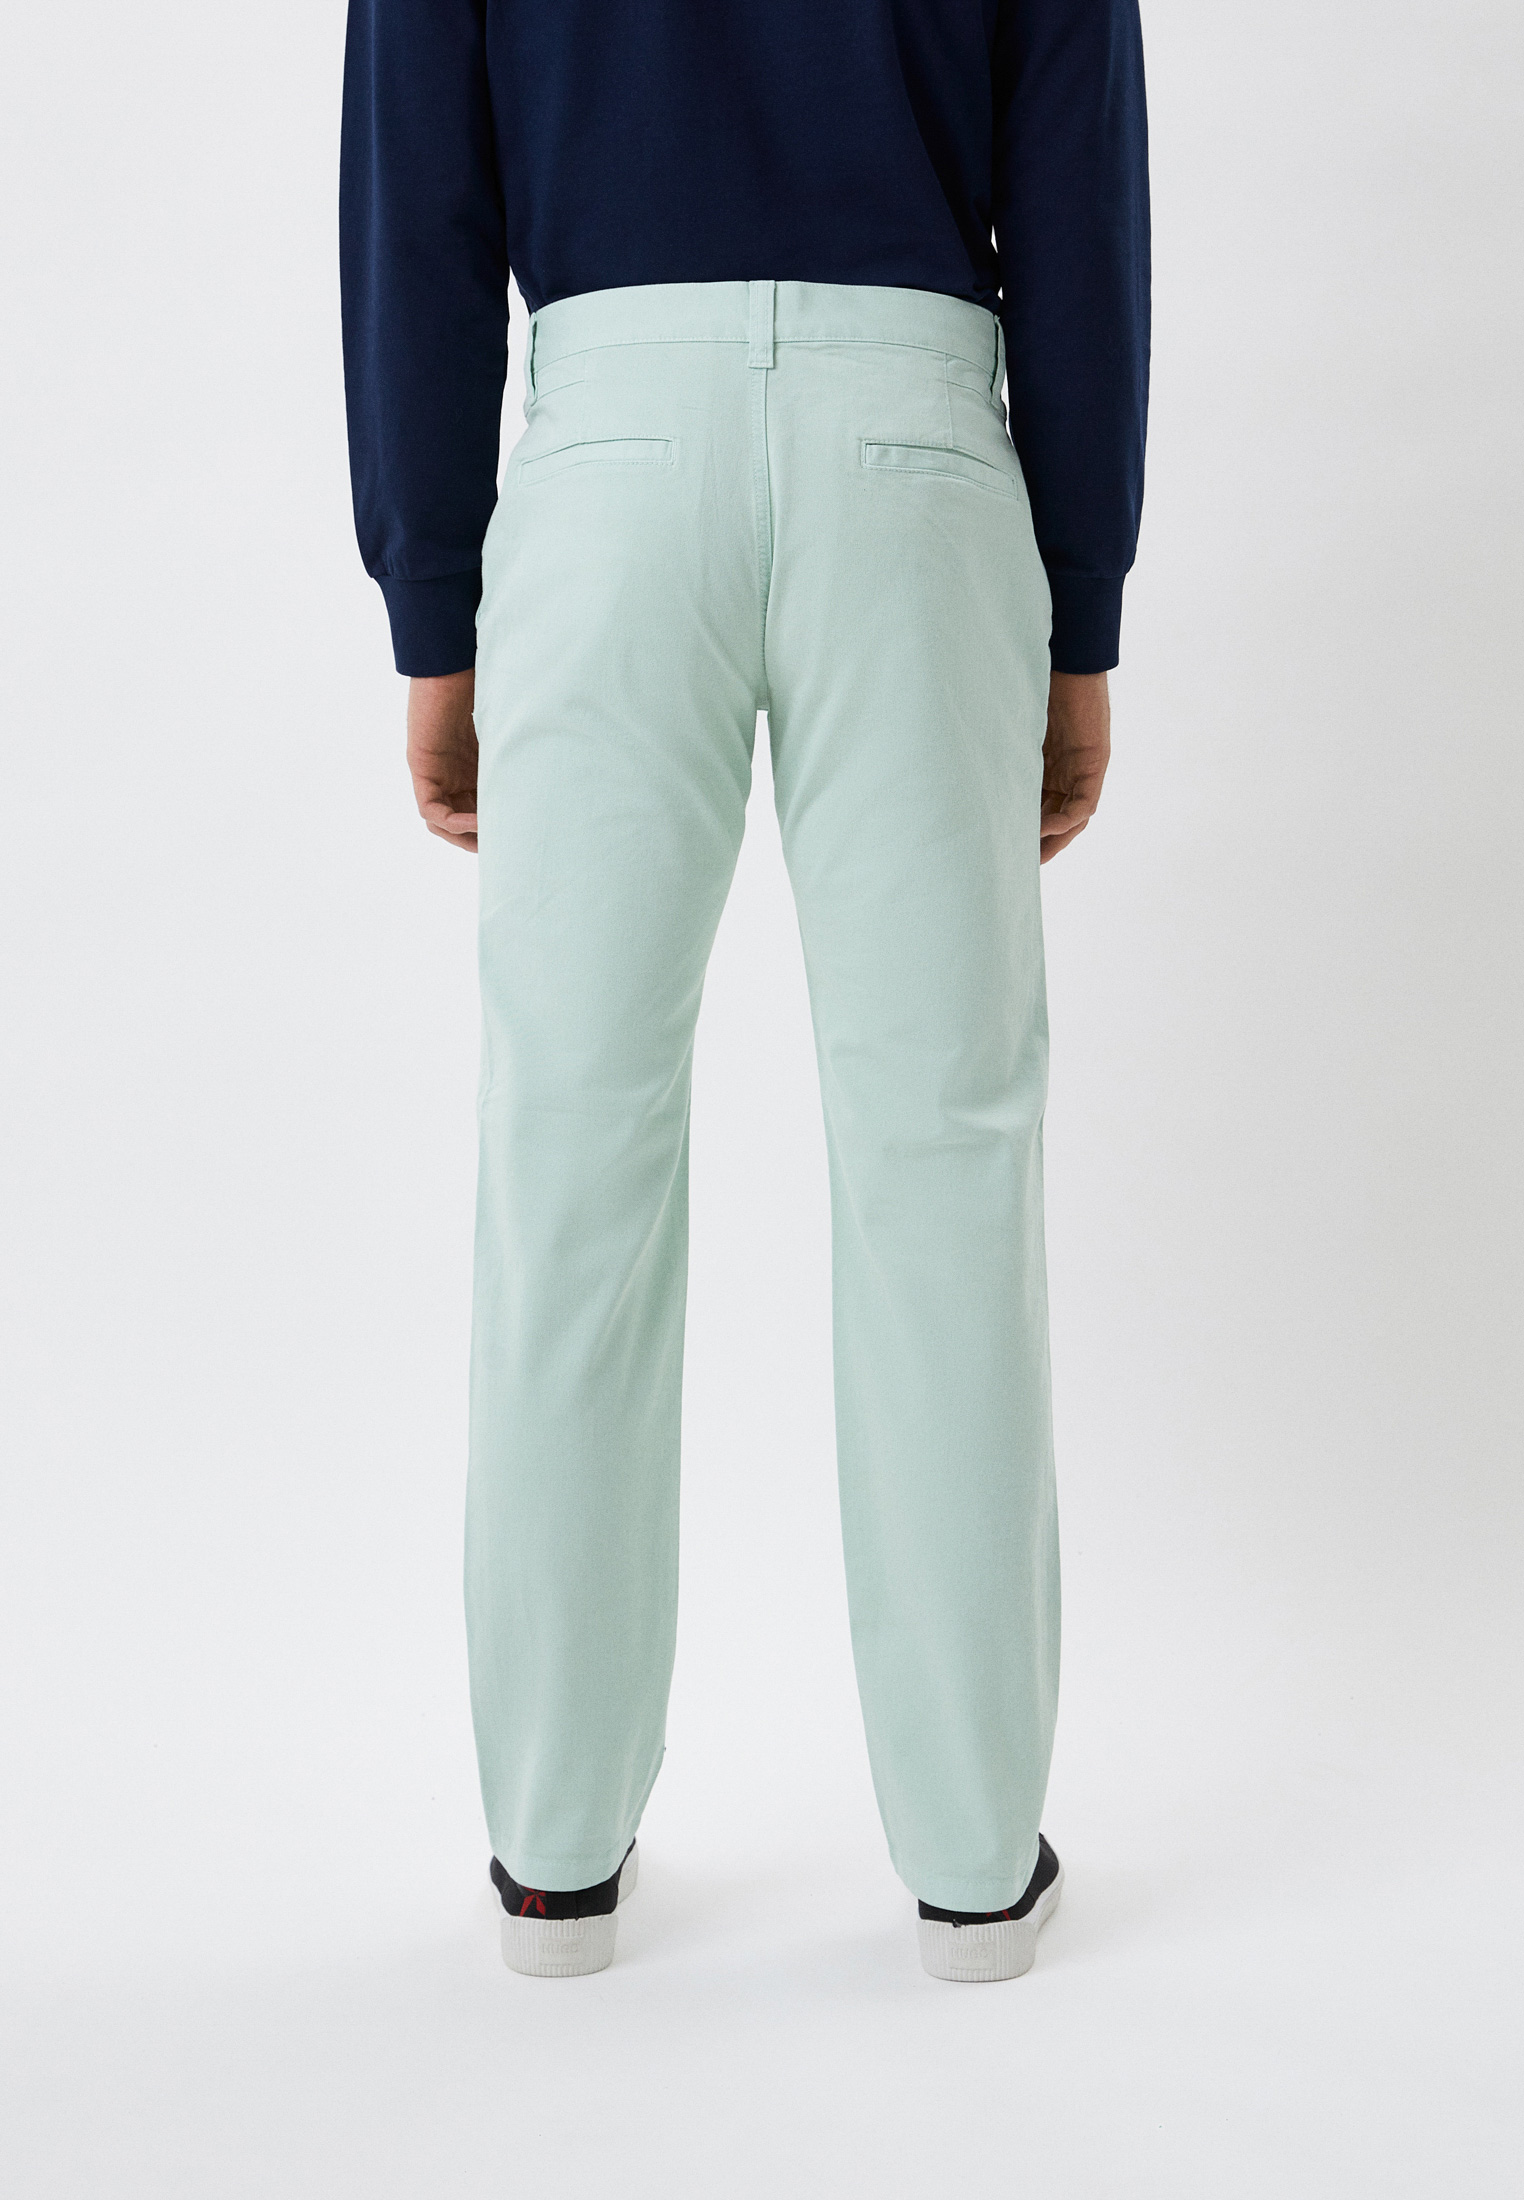 Мужские повседневные брюки Bikkembergs (Биккембергс) CP11100S3394: изображение 3